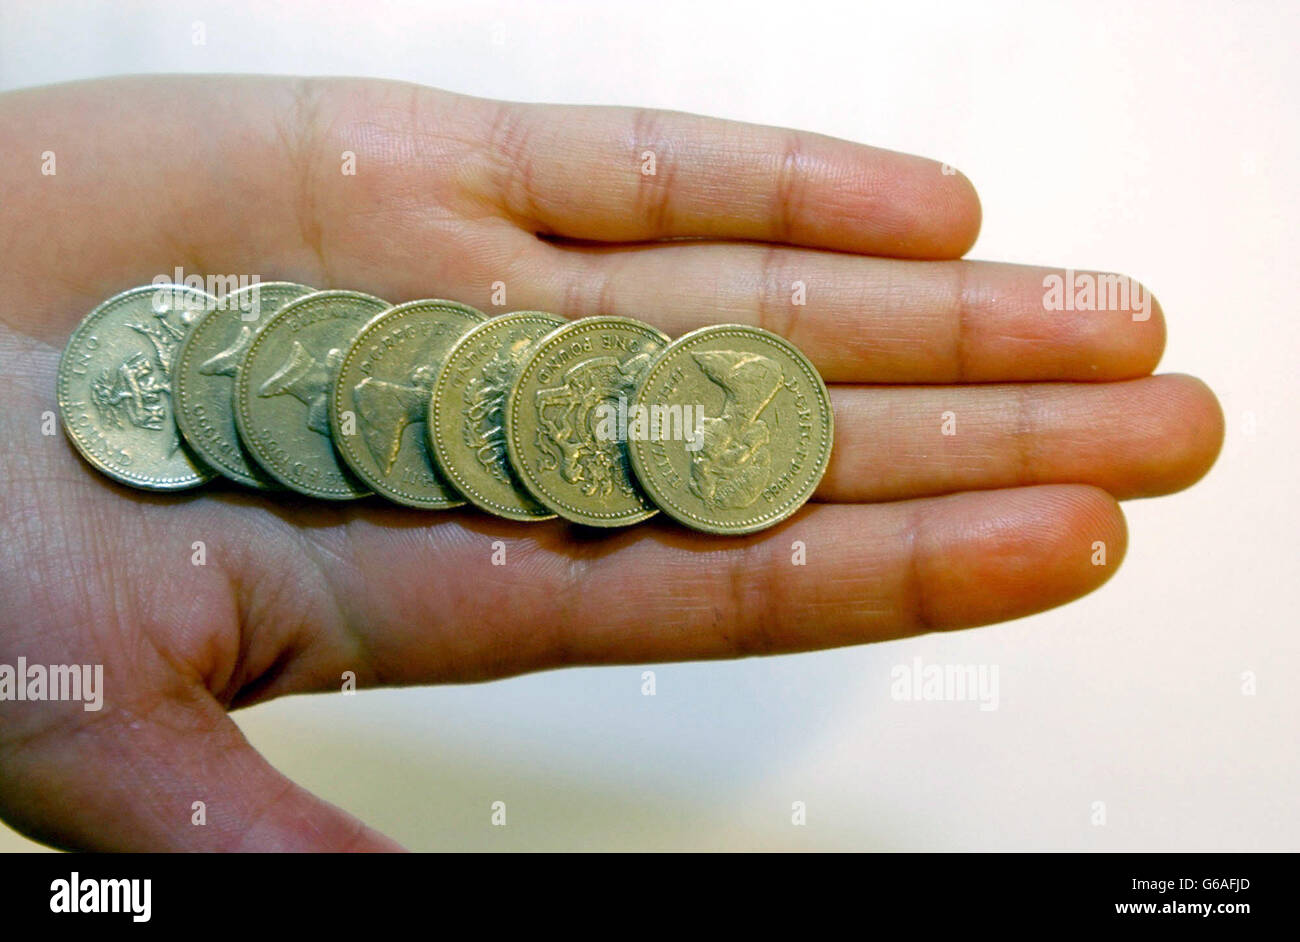 Britische Währung - 1 Münzen. Stock Bild der englischen One Pound Coins. Stockfoto